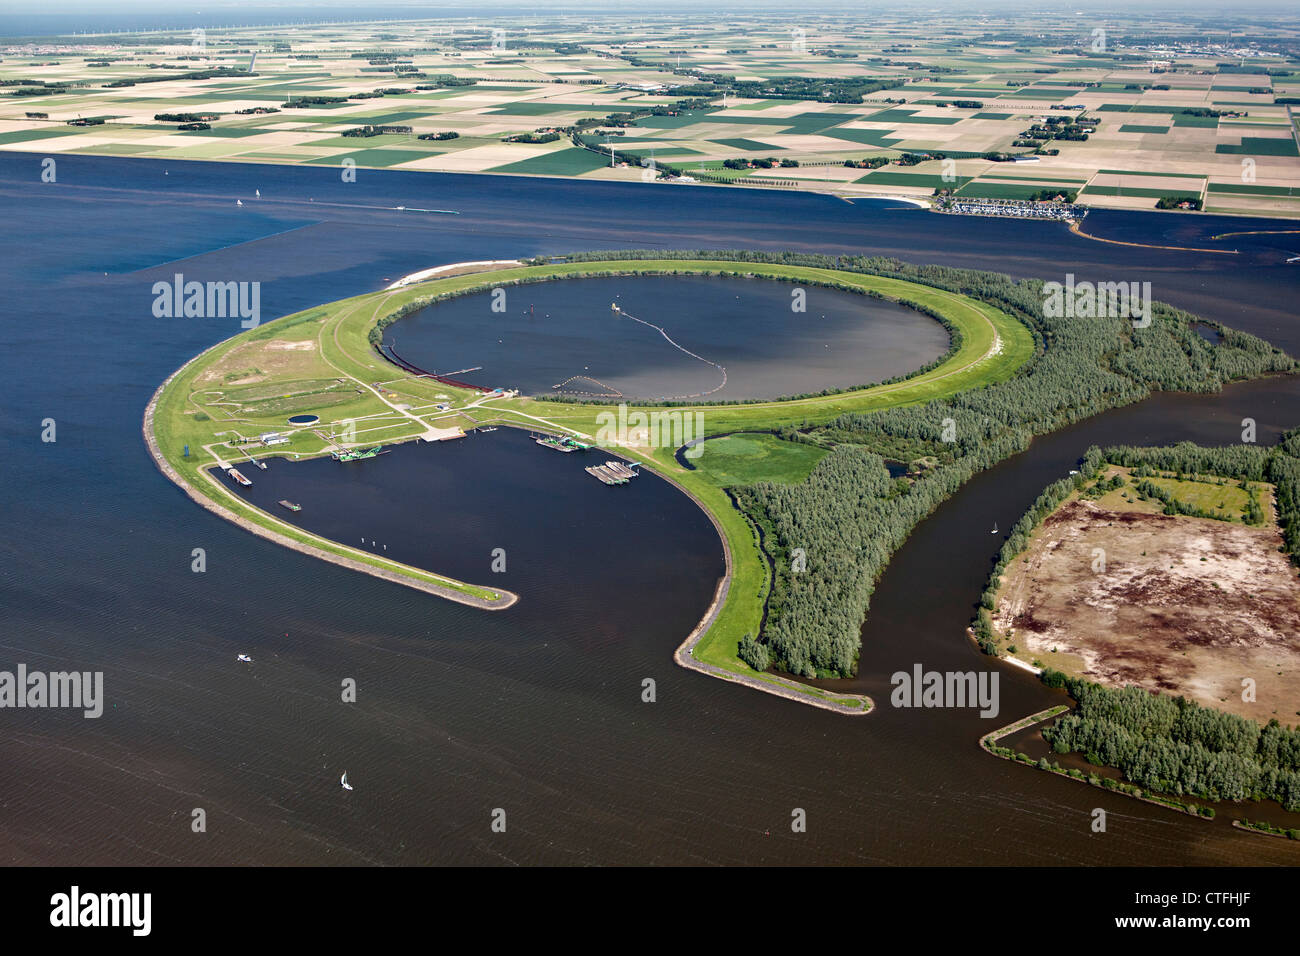 La Ijsseloog es una isla artificial en el lago llamado Ketelmeer utilizada como depósito de sedimentos de contaminación. Antena. Foto de stock